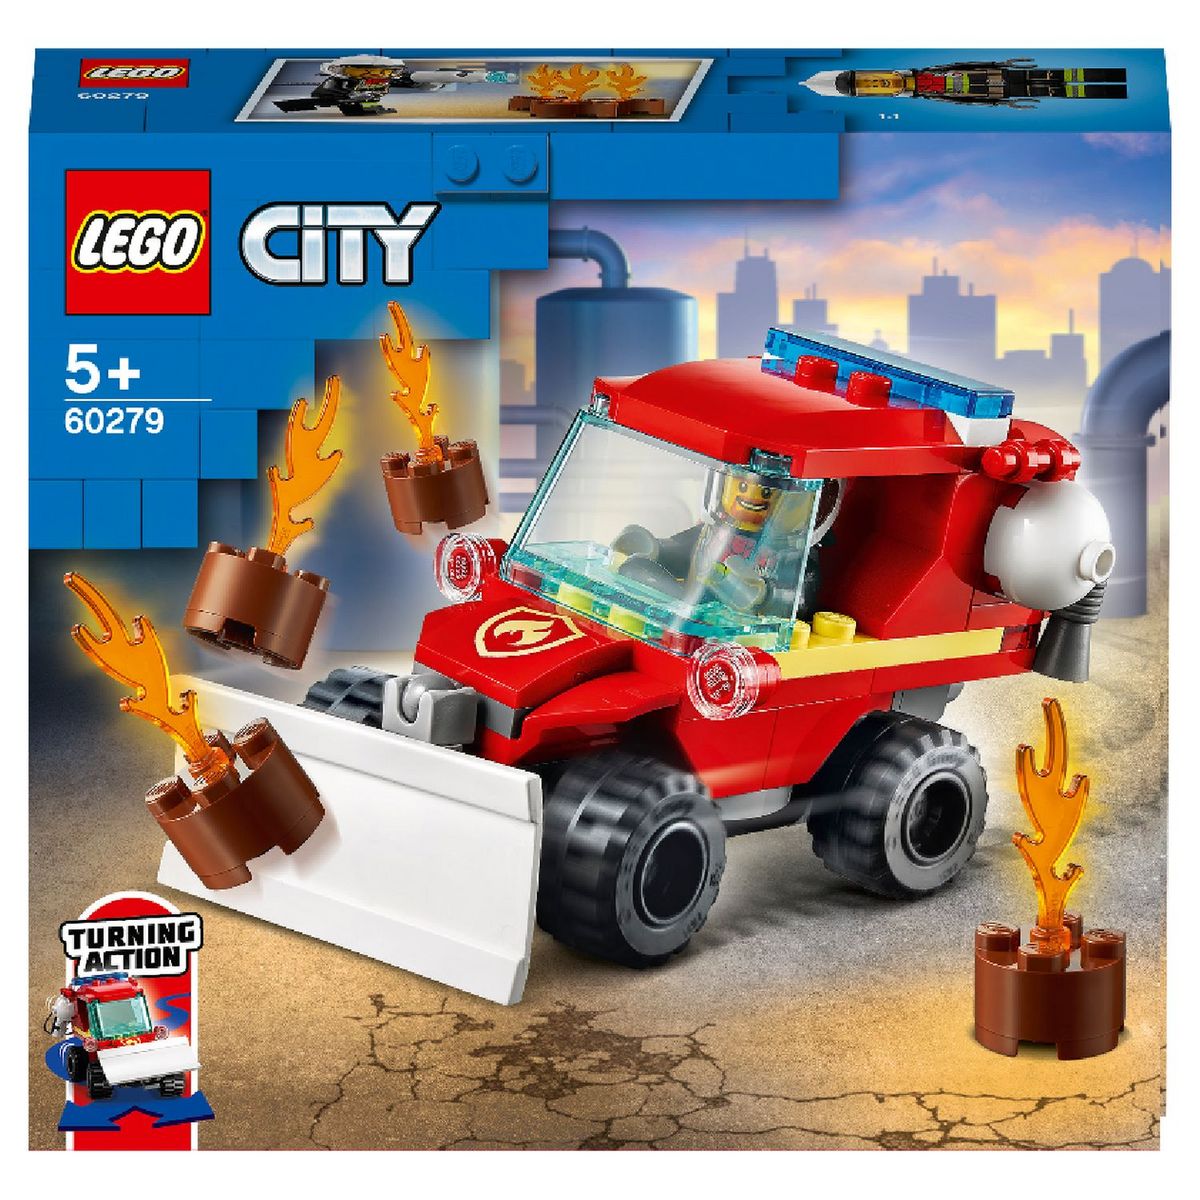 LEGO City 60393 Sauvetage en Tout-Terrain des Pompiers, Camion Jouet